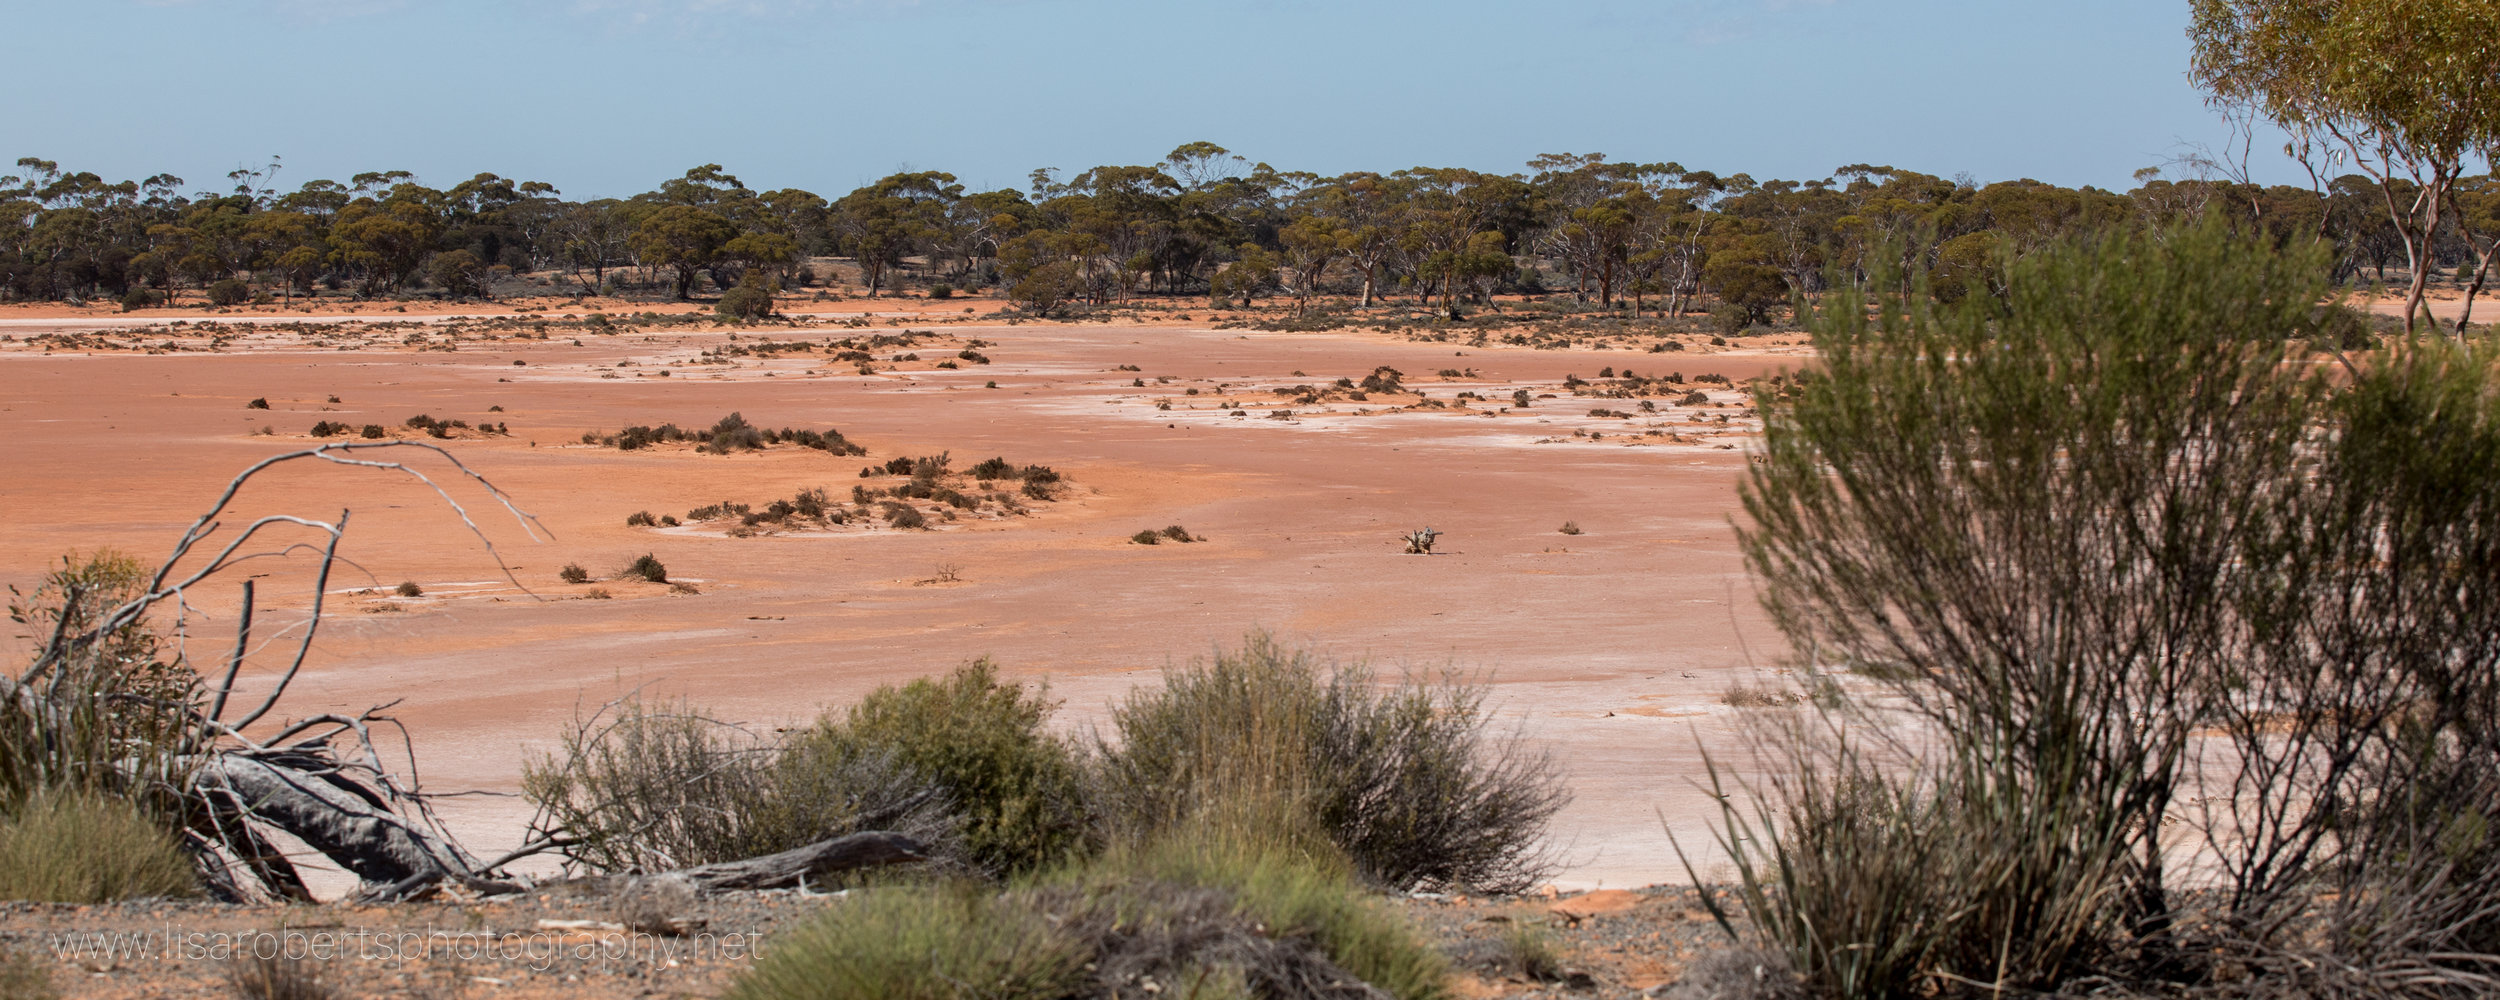  Red soil, Western Australia 